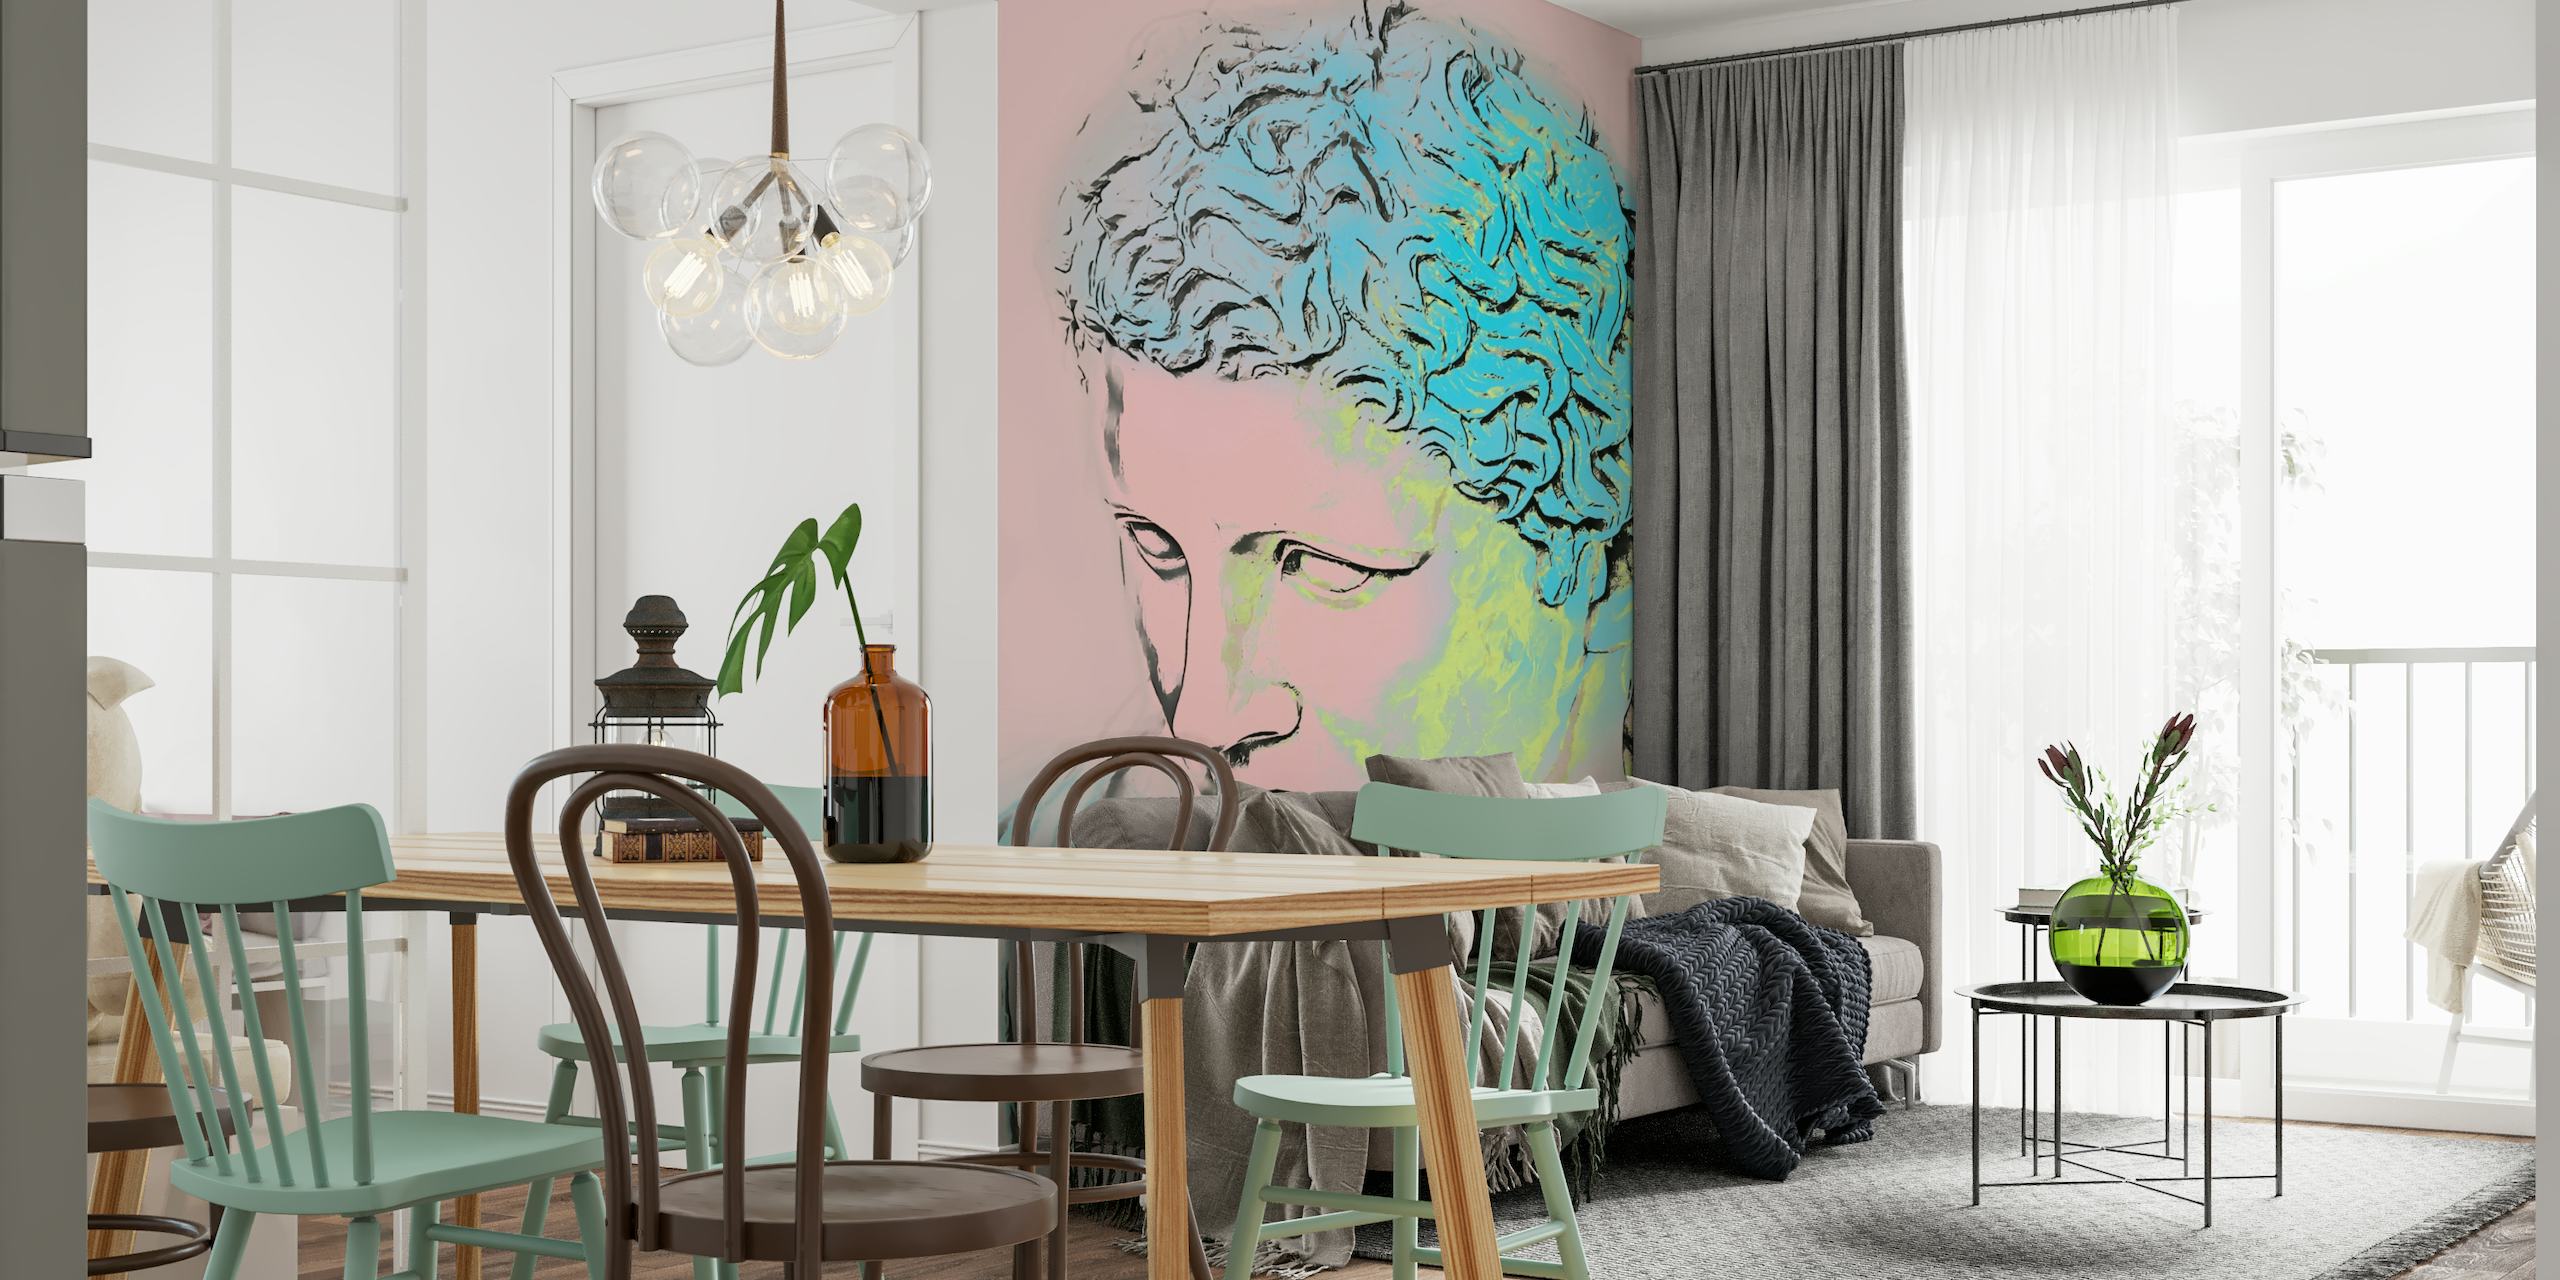 Ritratto stilizzato in stile neo art déco con murale con tavolozza di colori al neon